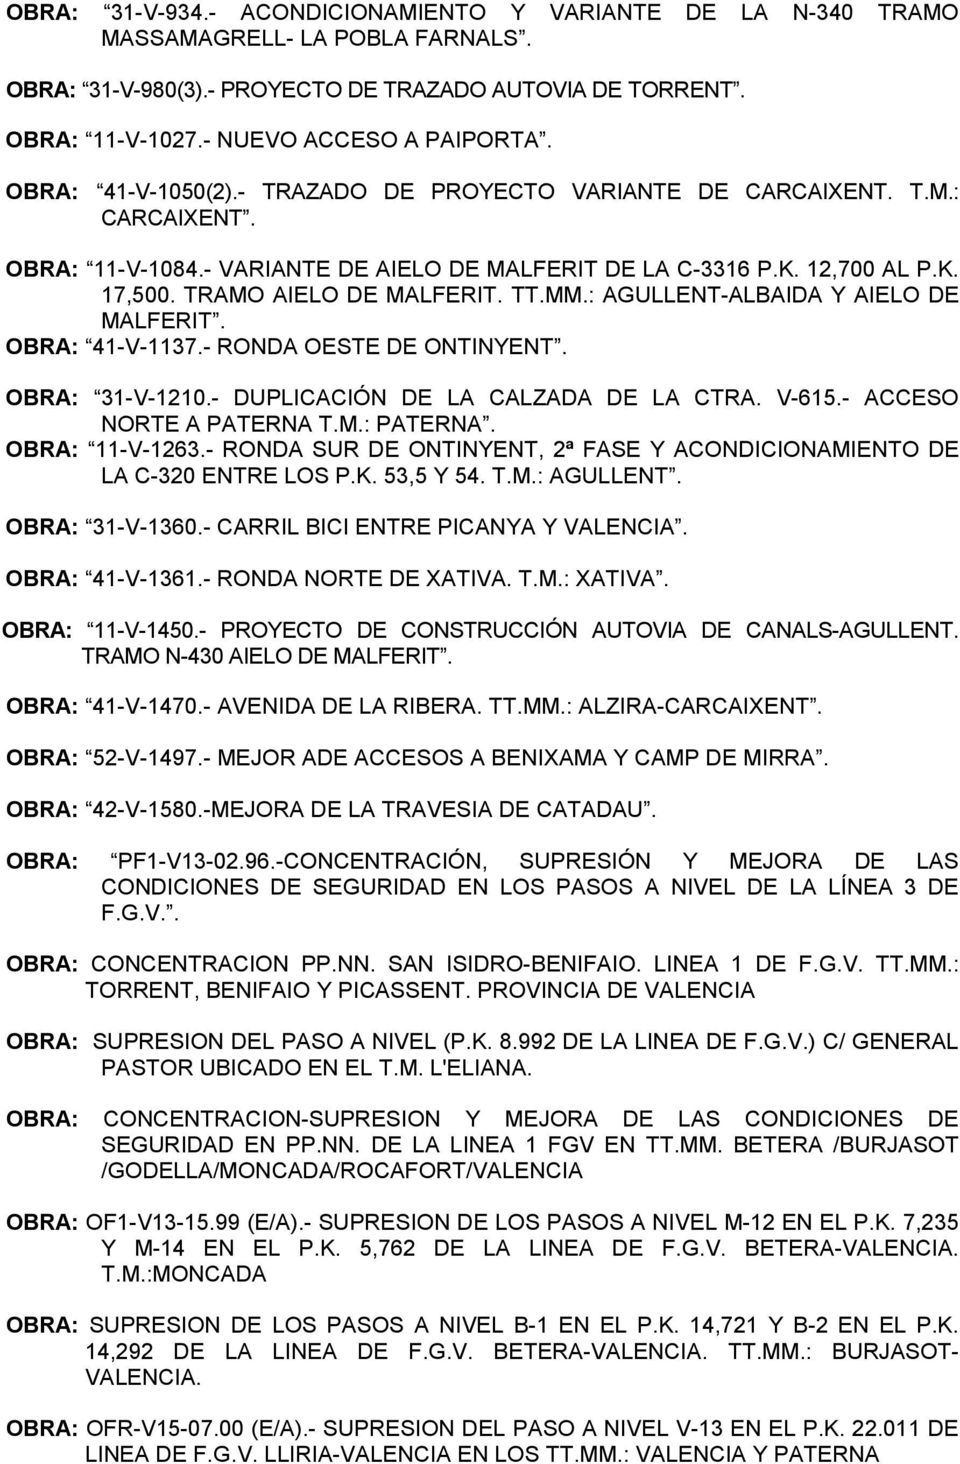 MM.: AGULLENT-ALBAIDA Y AIELO DE MALFERIT. OBRA: 41-V-1137.- RONDA OESTE DE ONTINYENT. OBRA: 31-V-1210.- DUPLICACIÓN DE LA CALZADA DE LA CTRA. V-615.- ACCESO NORTE A PATERNA T.M.: PATERNA.